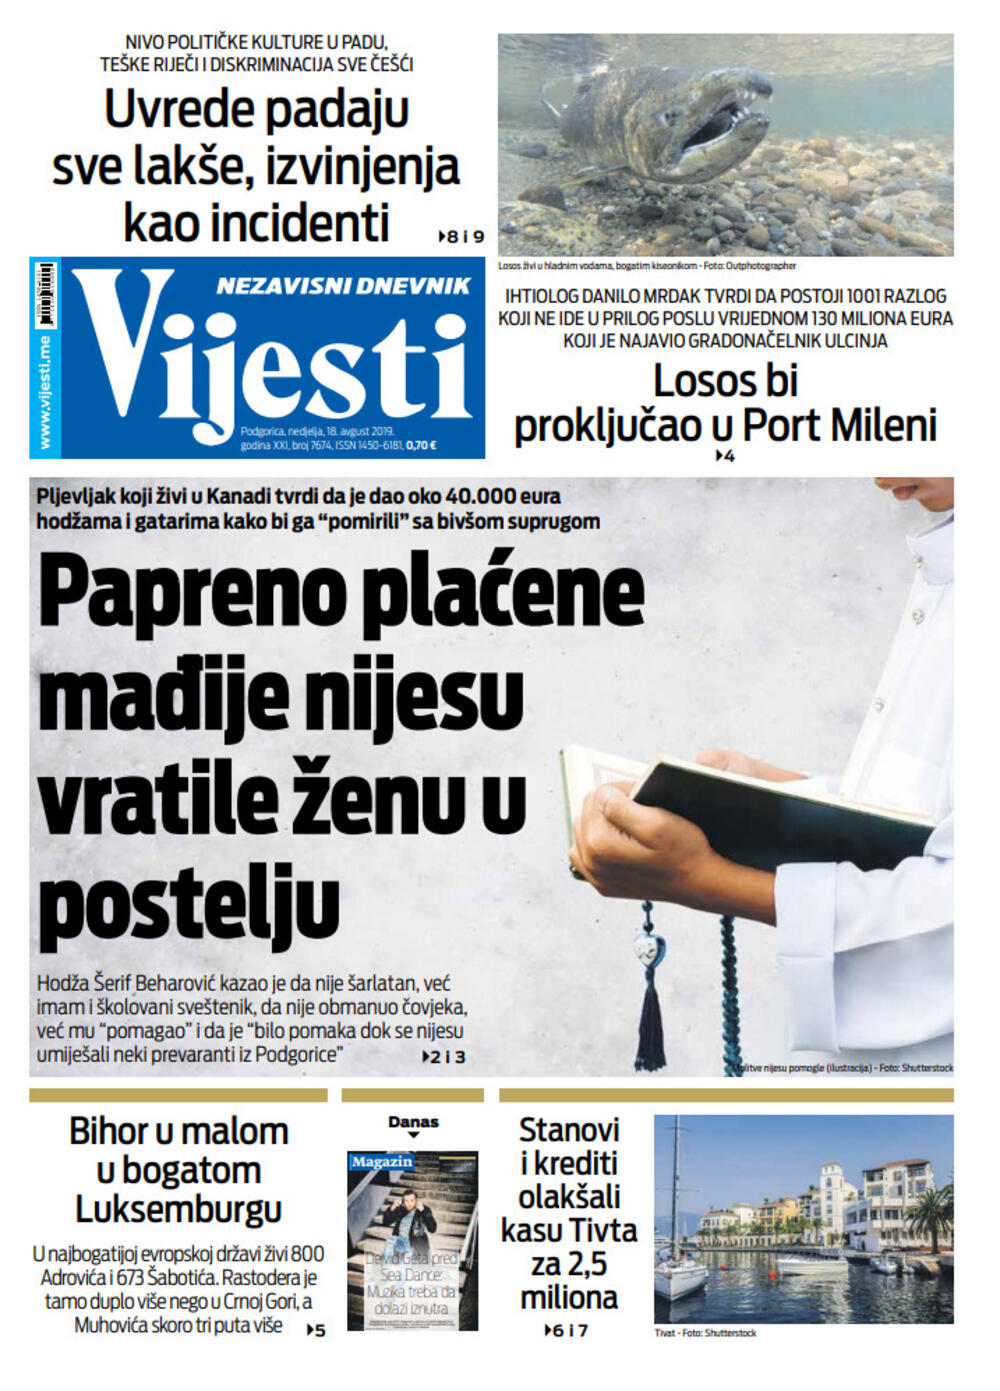 Naslovna strana "Vijesti" za 18. avgust, Foto: Vijesti